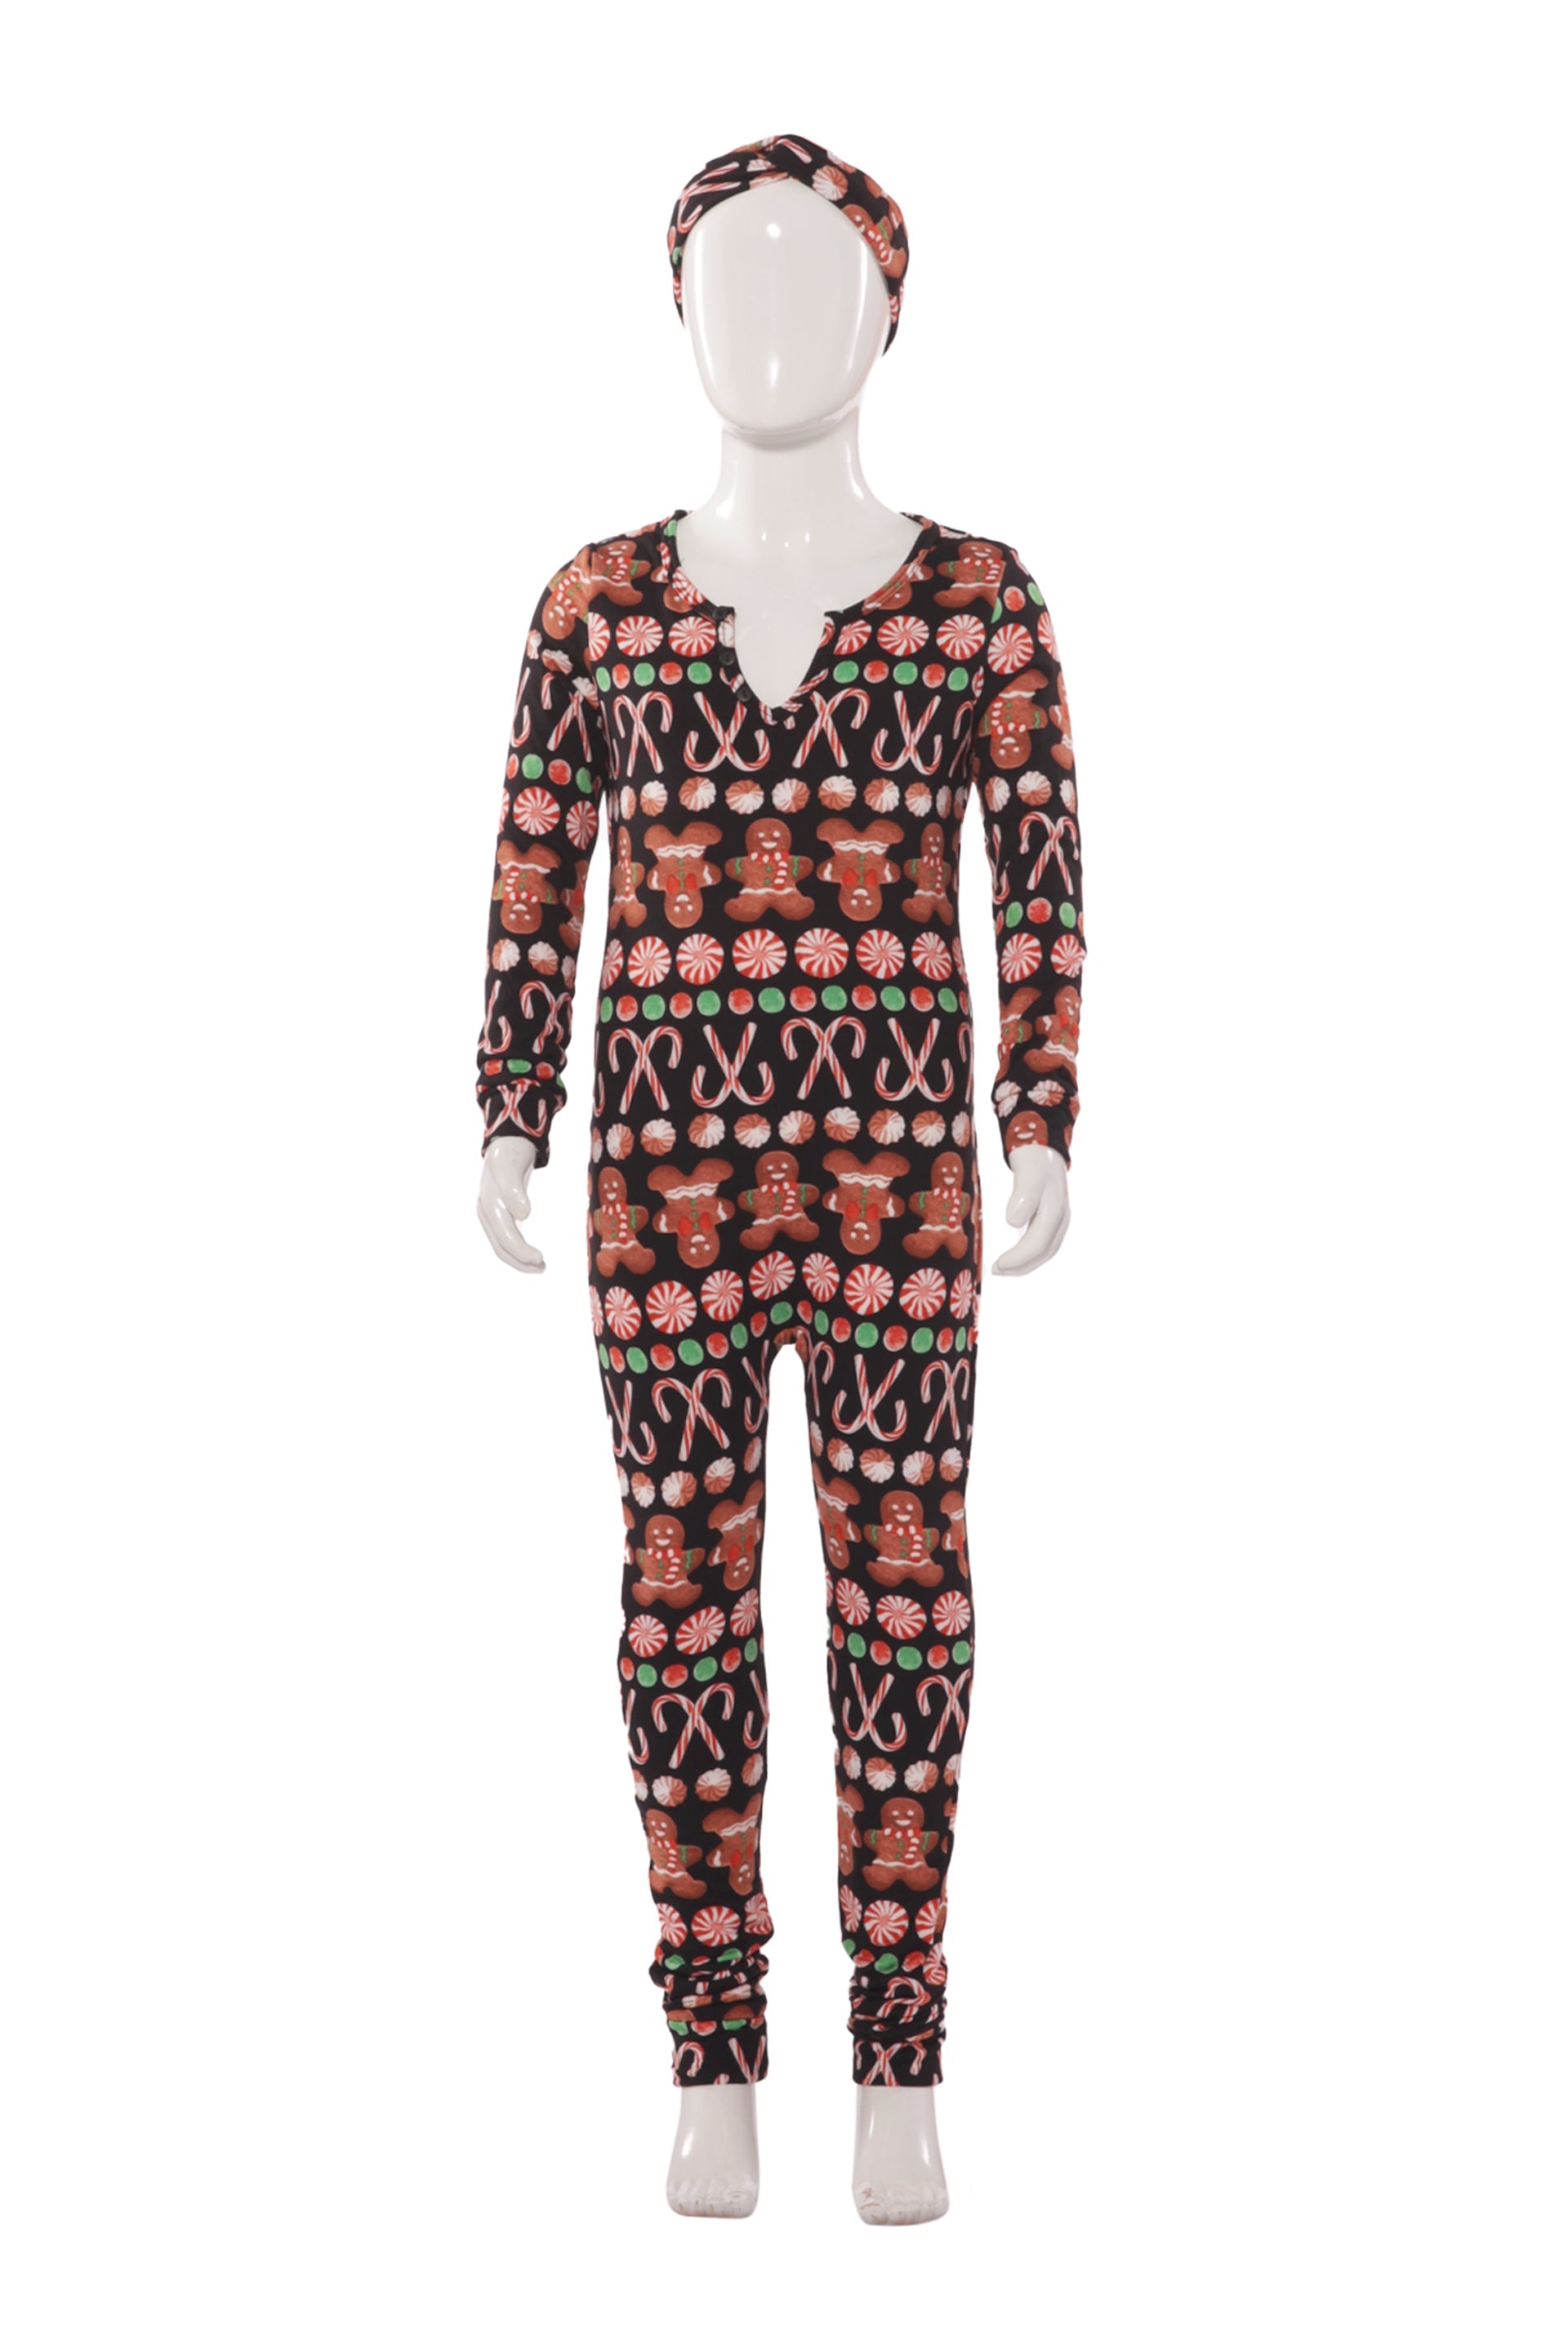 Wholesale Kids Christmas Print Fleece Lined Jumpsuit Onesie Pajamas - Black & Brown